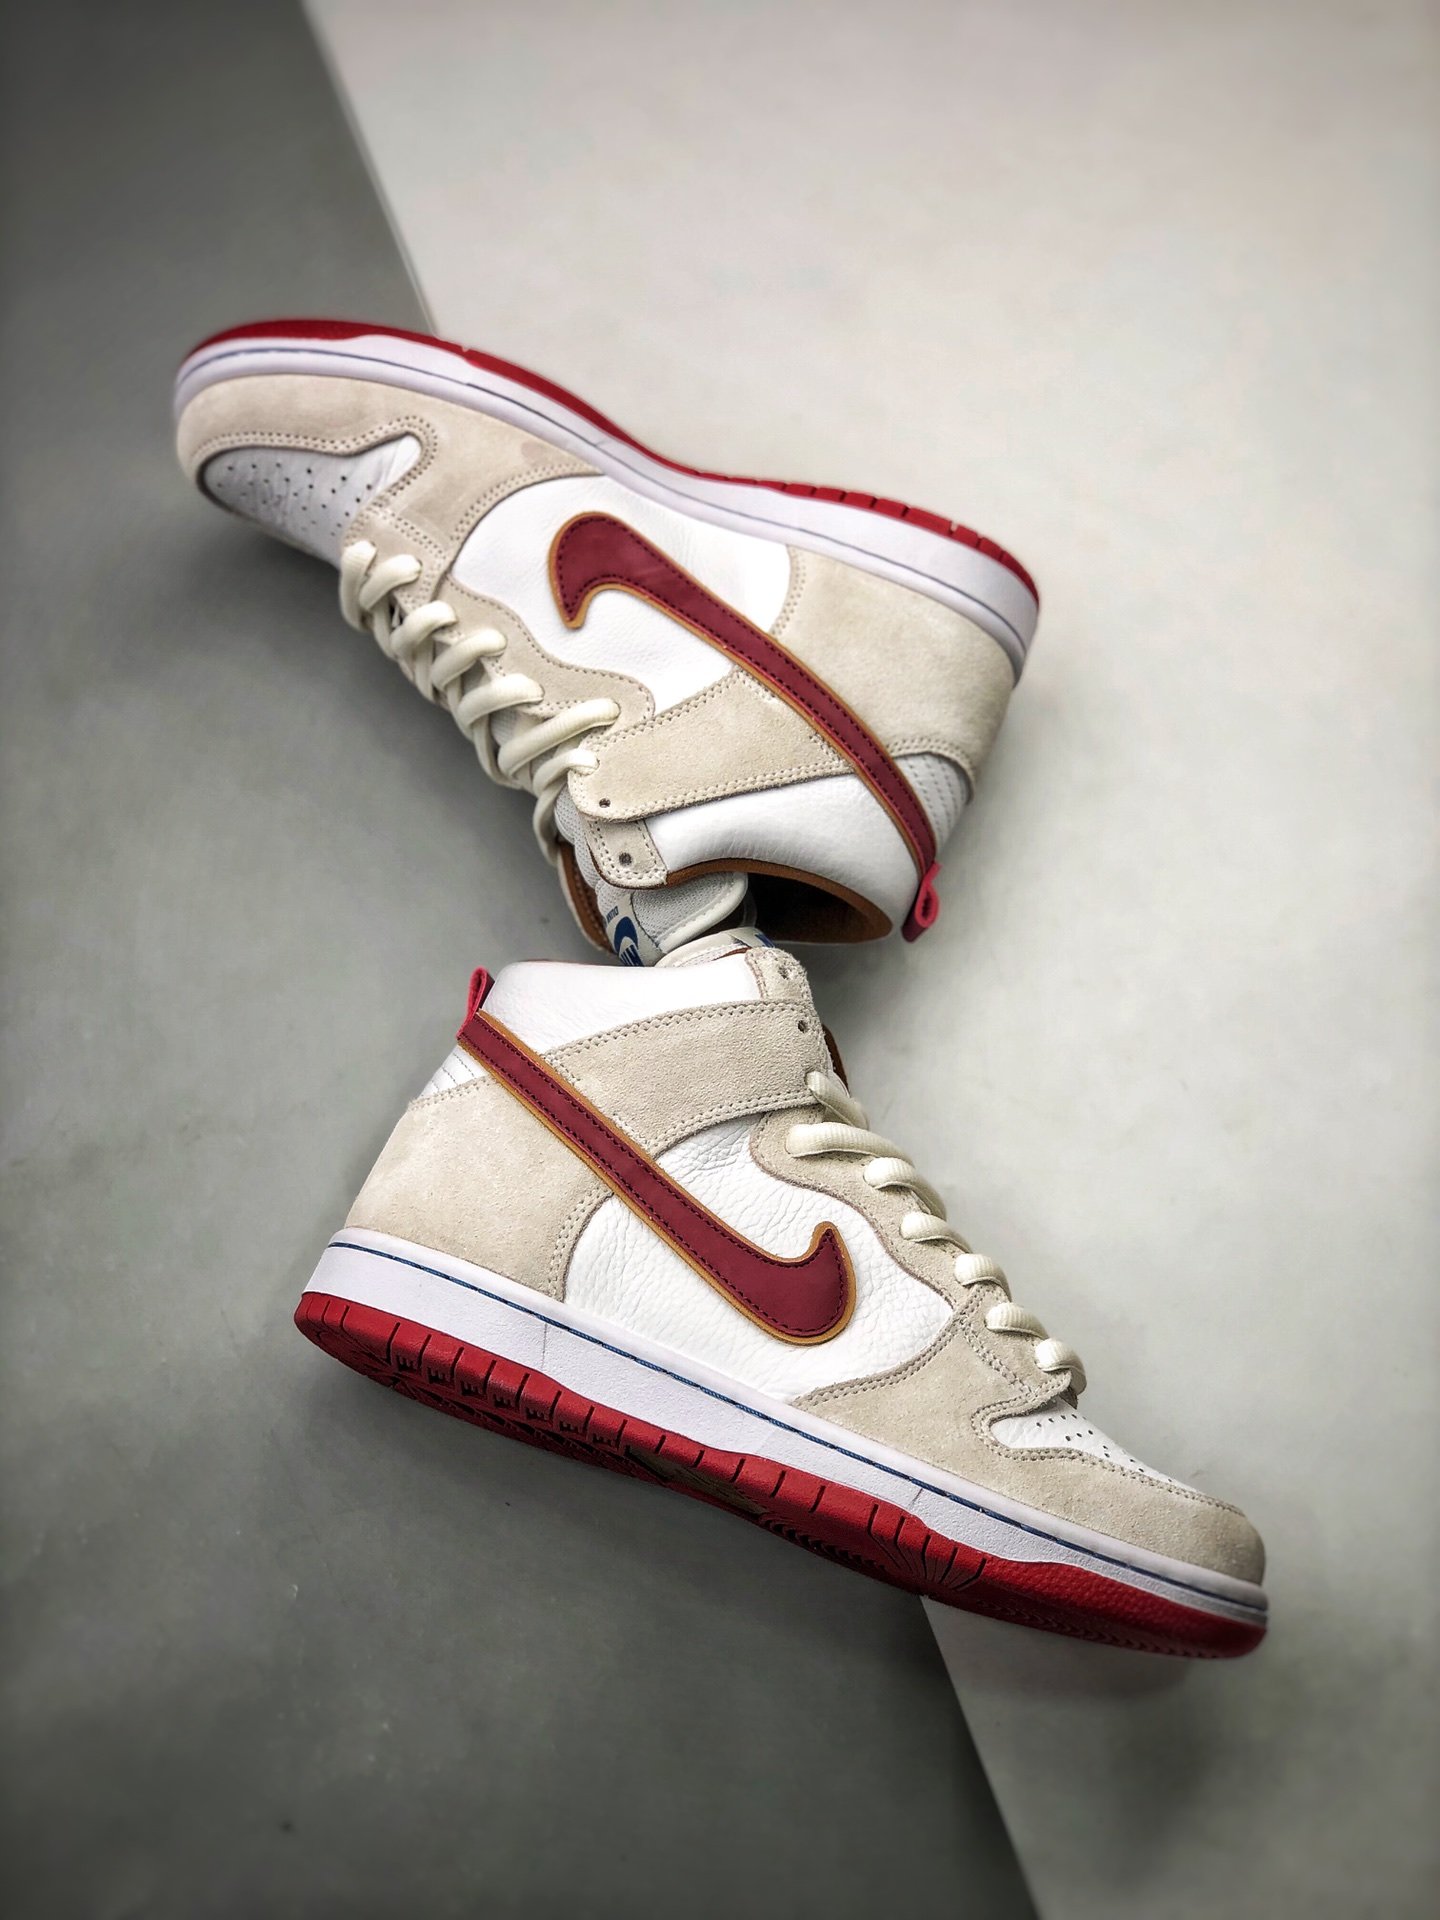 Nike SB Dunk High âTeam Crimsonâ CV9499-100 For Sale â Sneaker Hello